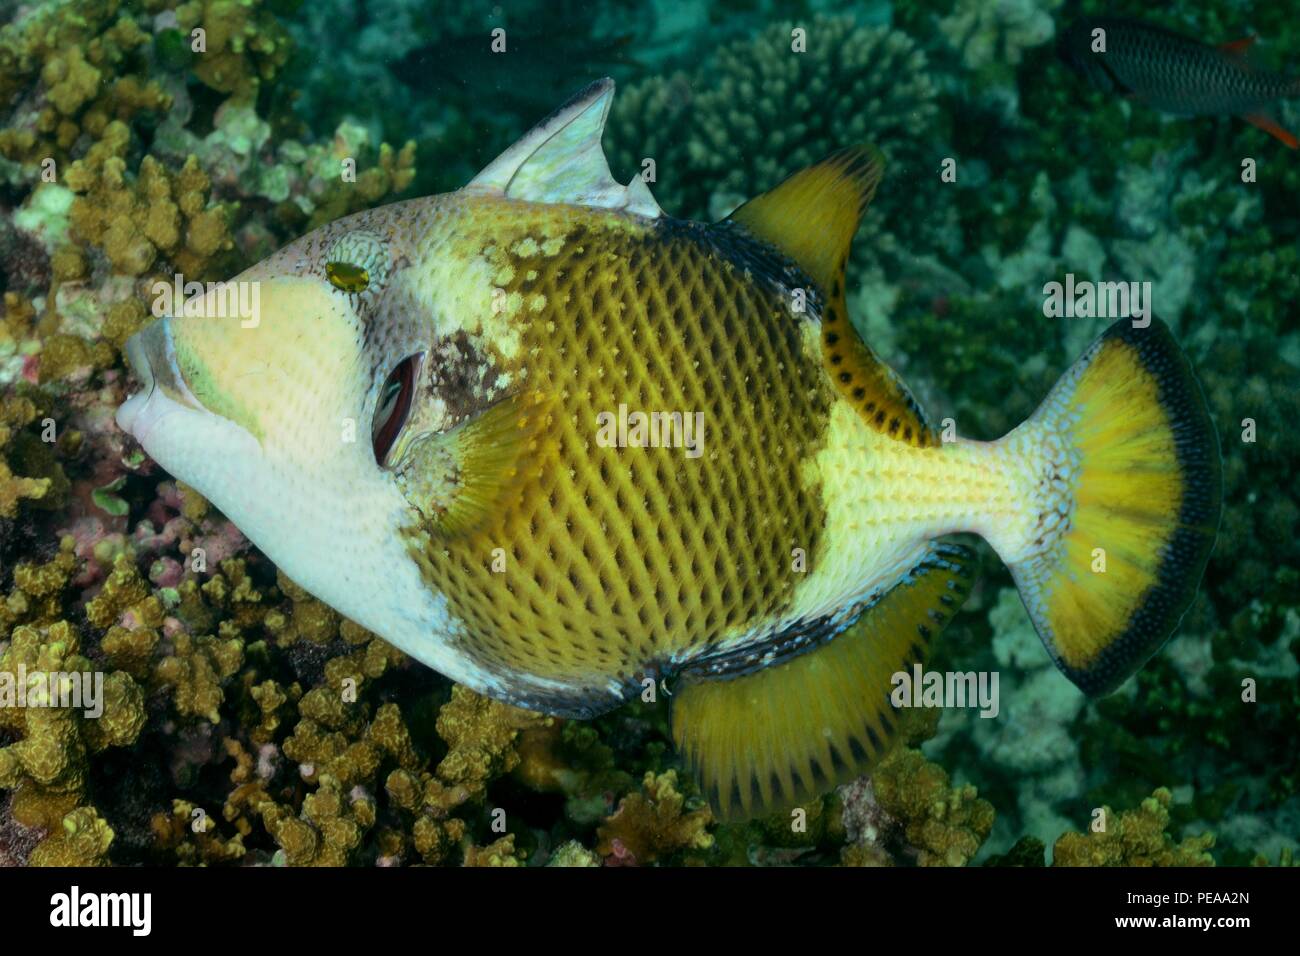 Riesen-Drückerfisch, titan triggerfish, giant triggerfish, Balistoides viridescens, Malediven, Indischer Ozean, maldives, Indian Ocean Stock Photo